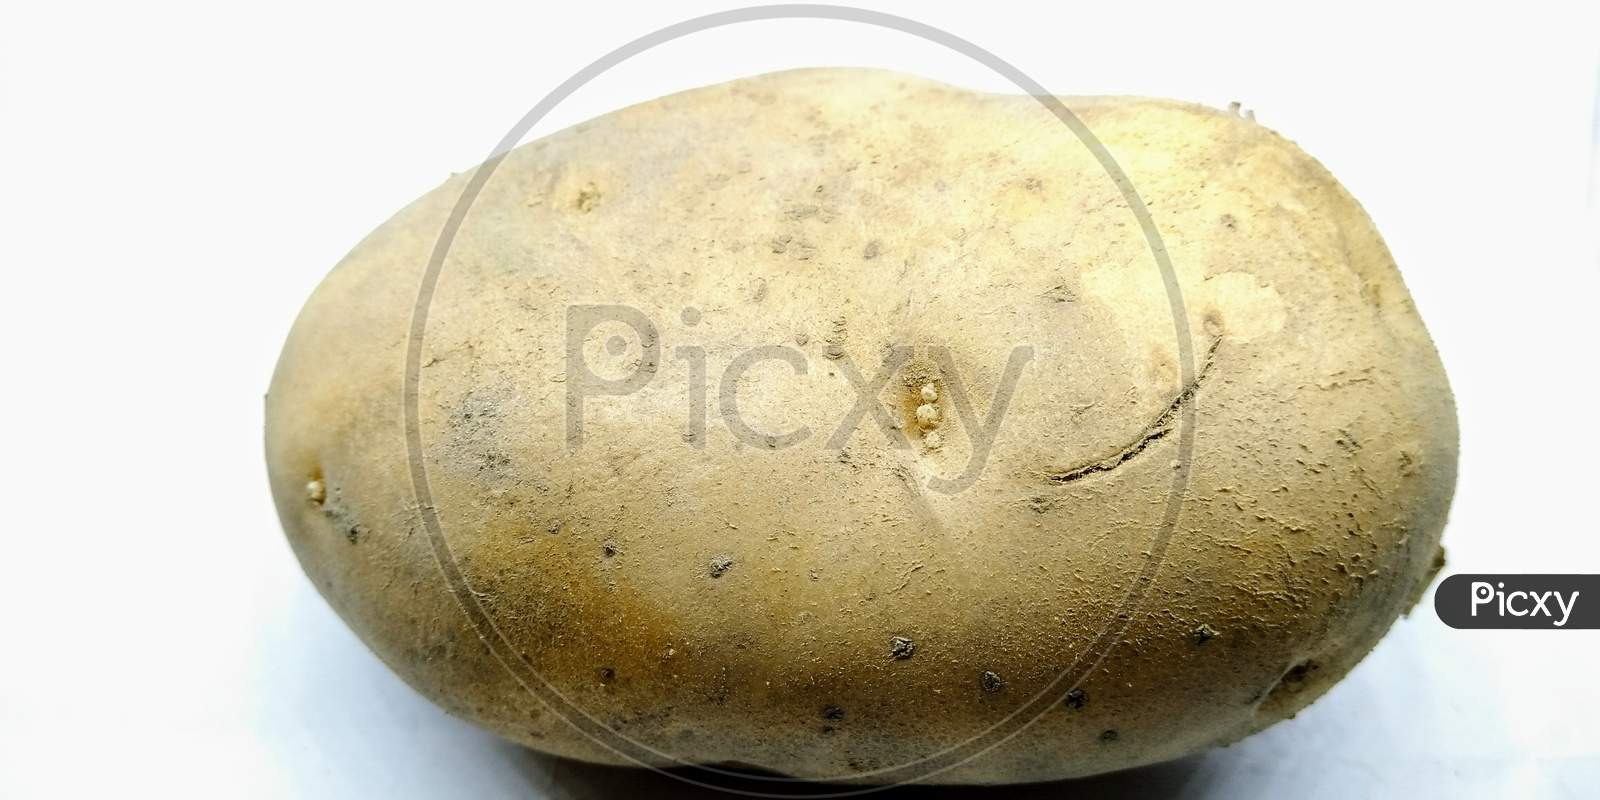 Potato Closeup On White Background